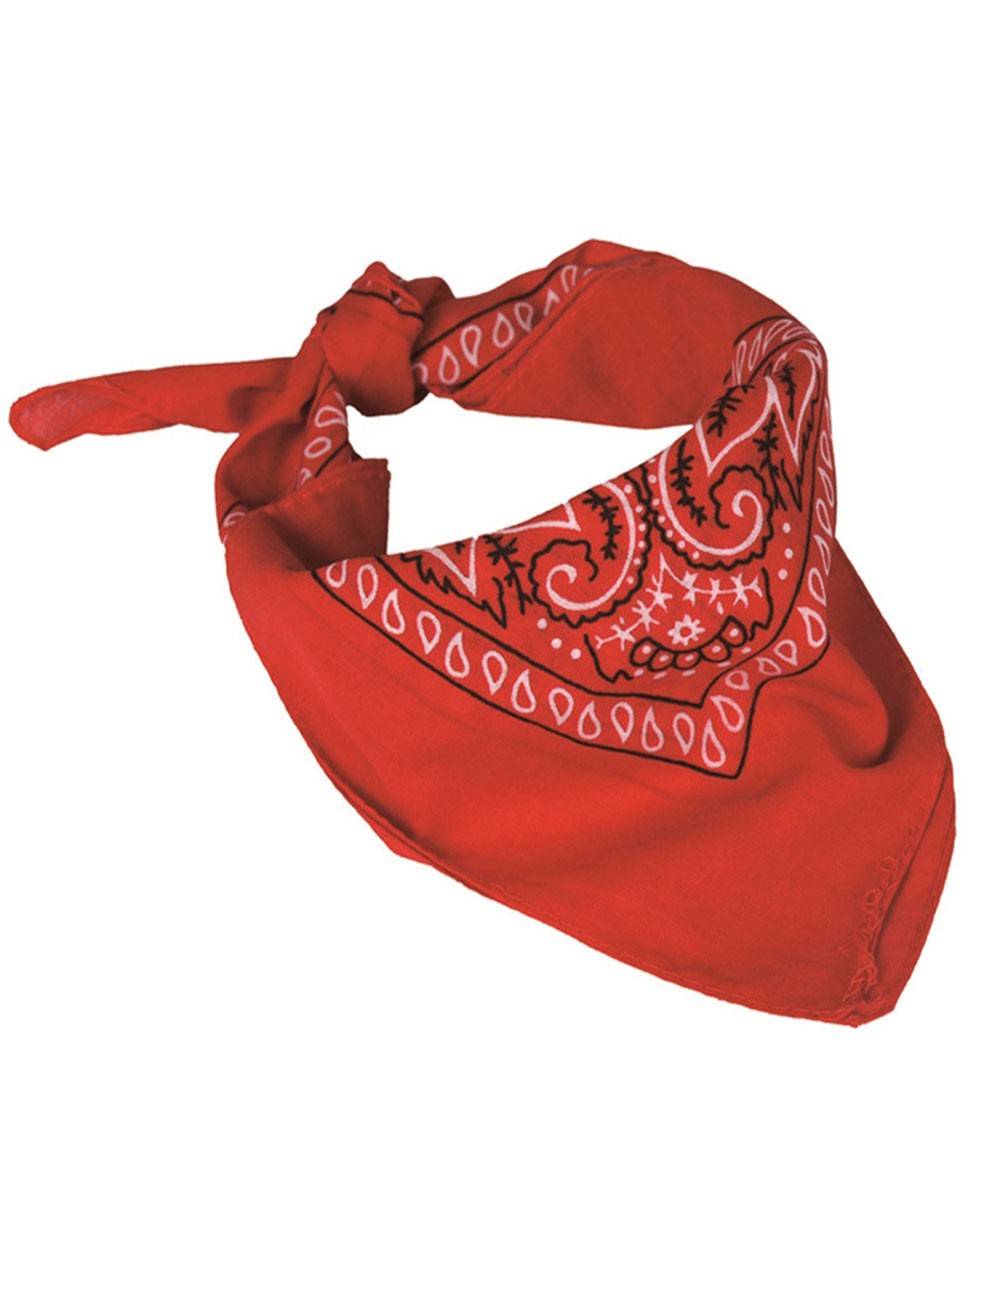 Повязки на голову шею. Валберис бандана. Бандана Western. Красный платок бандана. Бандана (на шею).